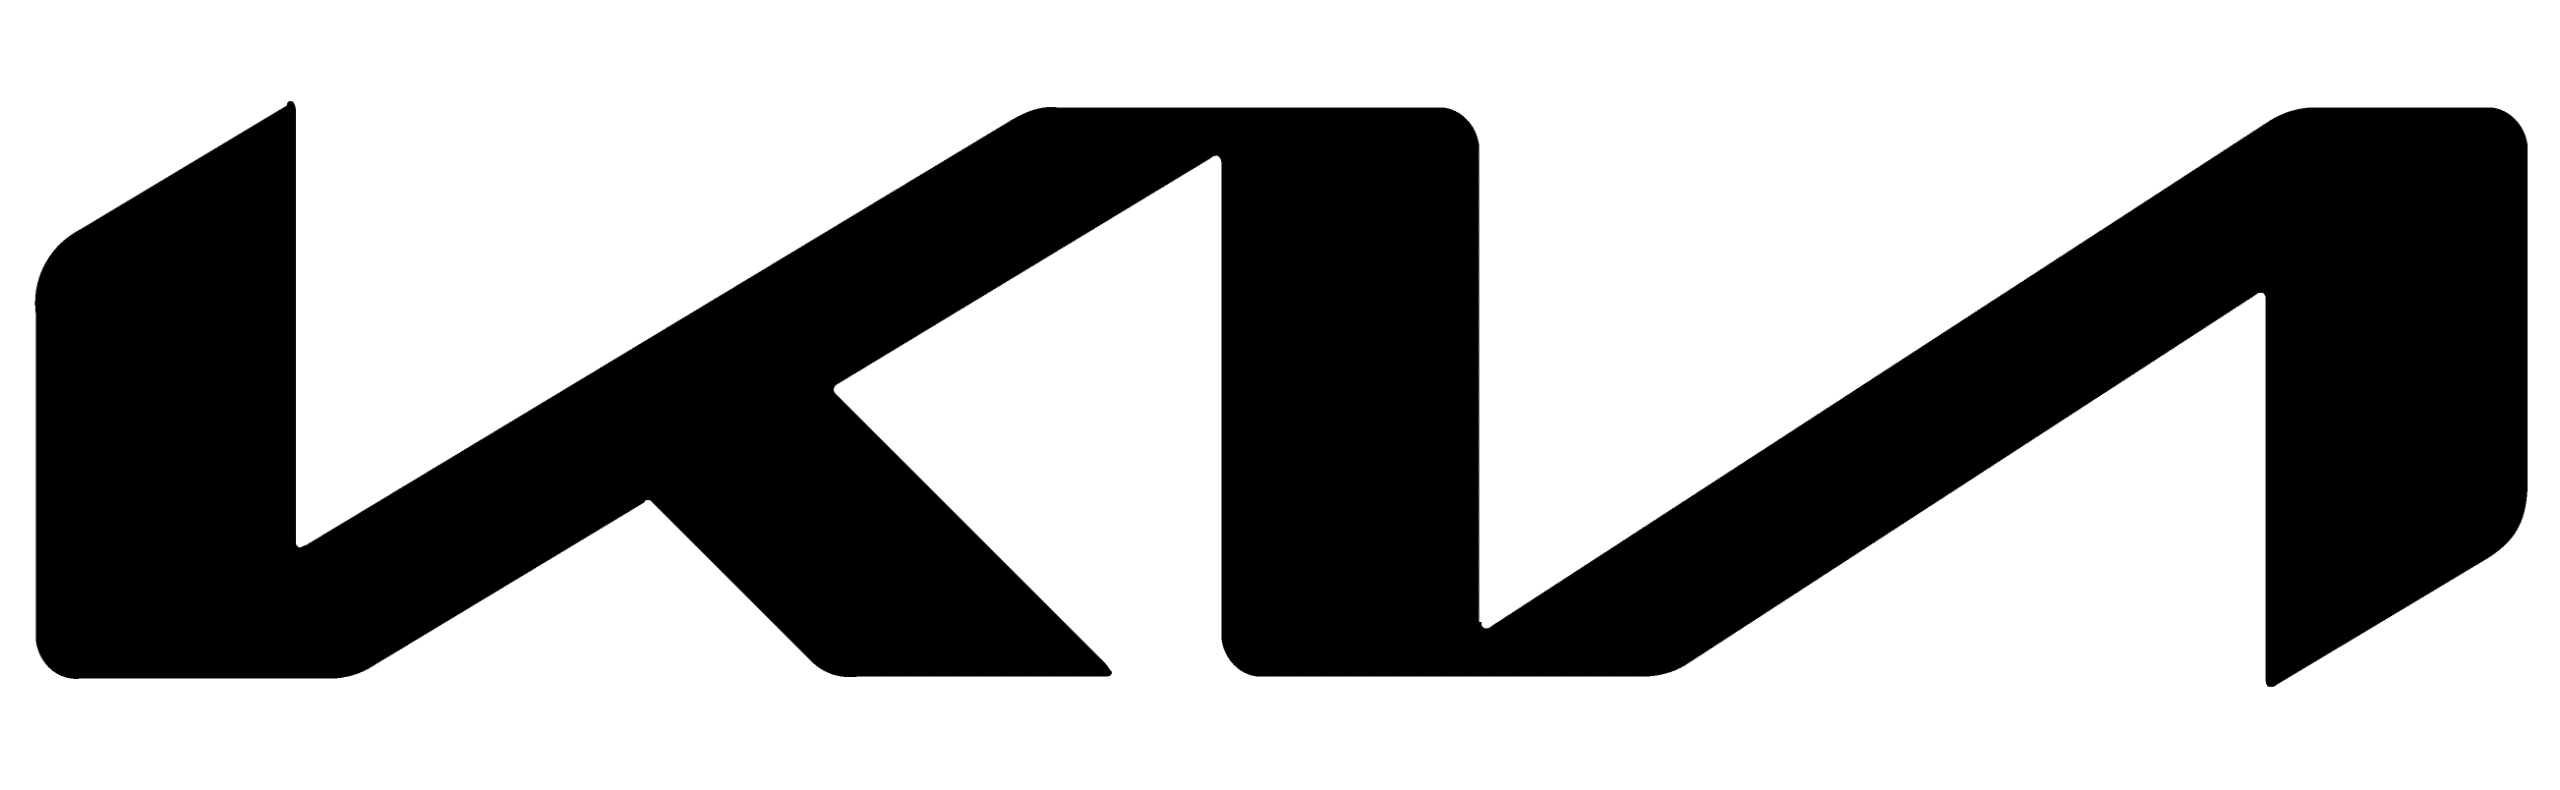 Kia Motors New 2021